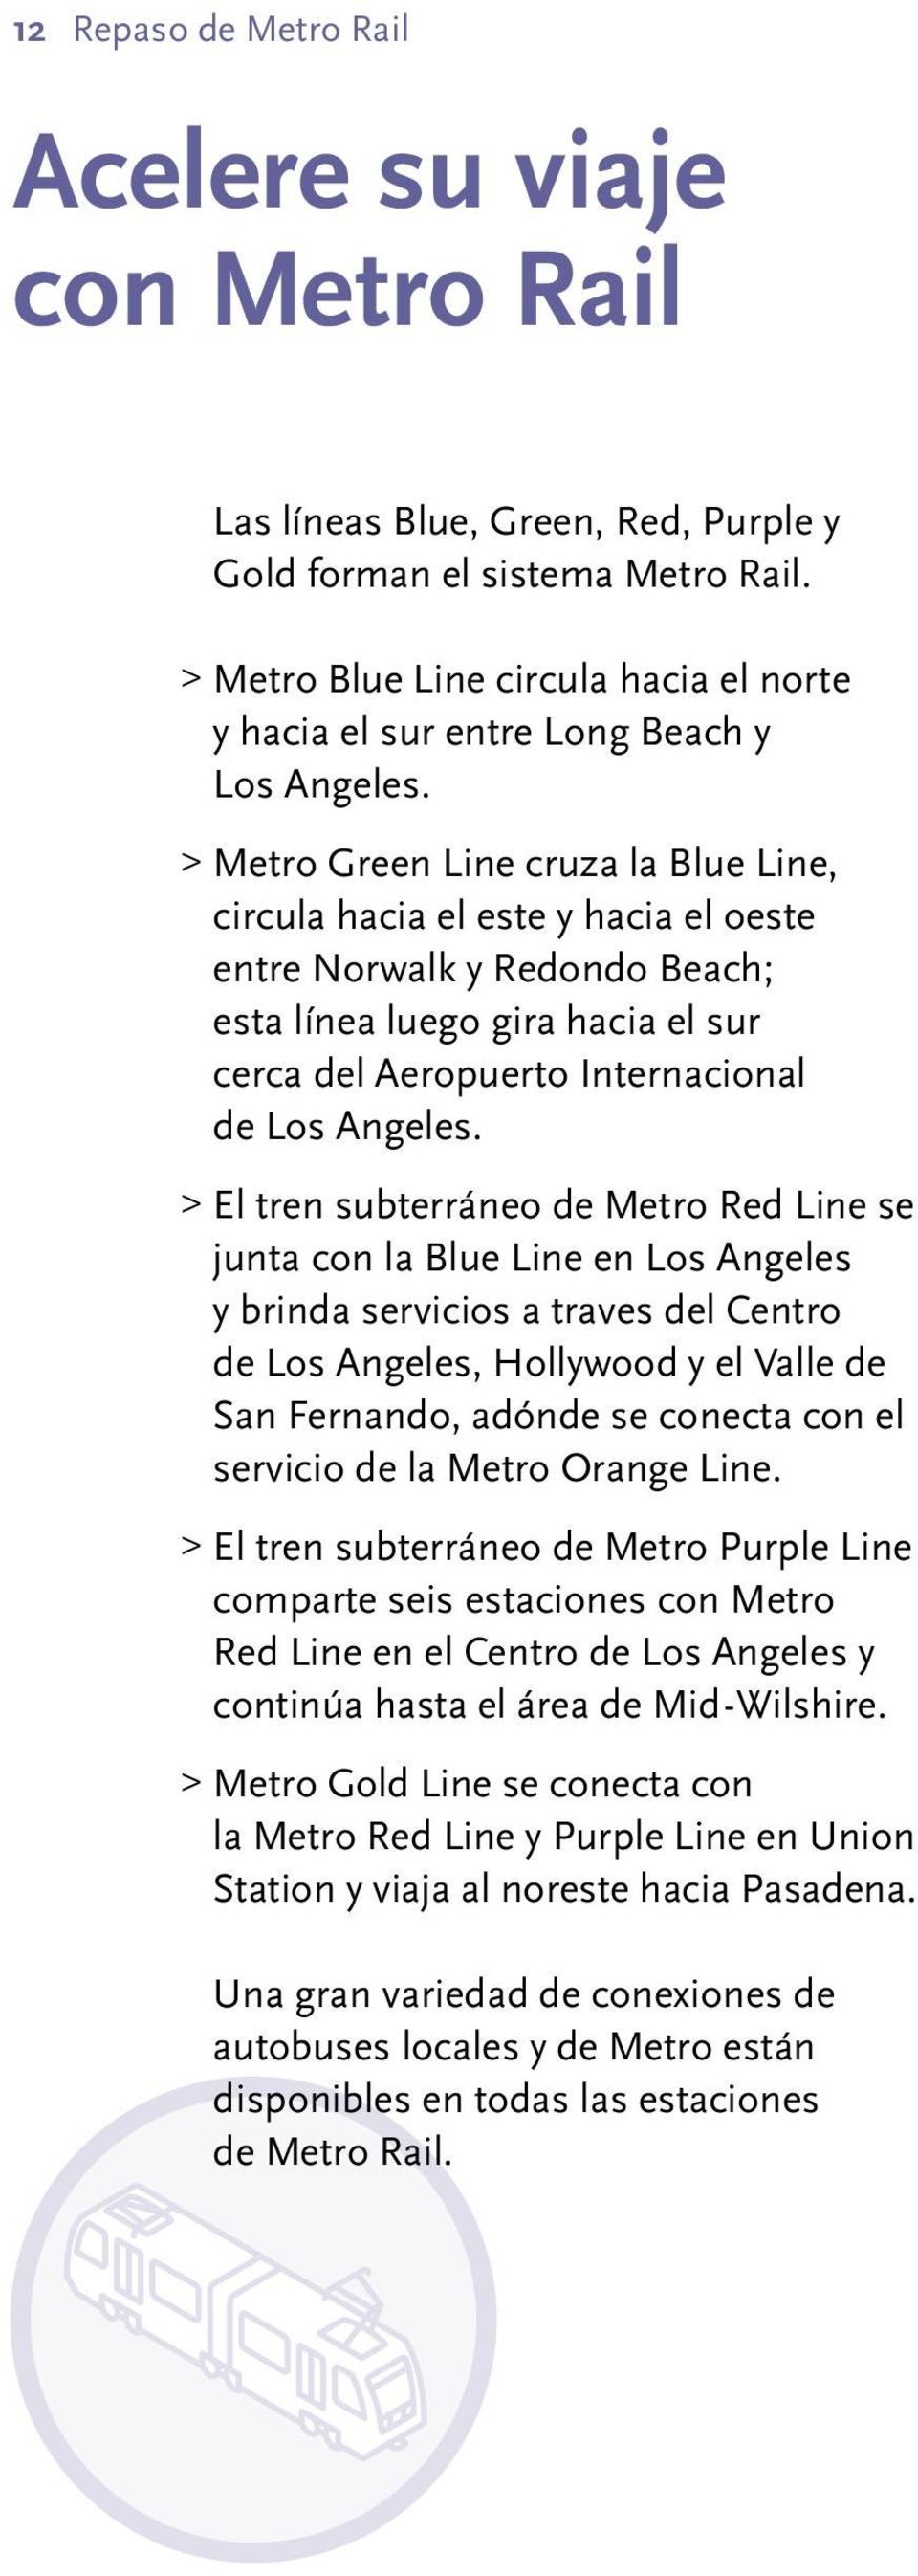 > Metro Green Line cruza la Blue Line, circula hacia el este y hacia el oeste entre Norwalk y Redondo Beach; esta línea luego gira hacia el sur cerca del Aeropuerto Internacional de Los Angeles.